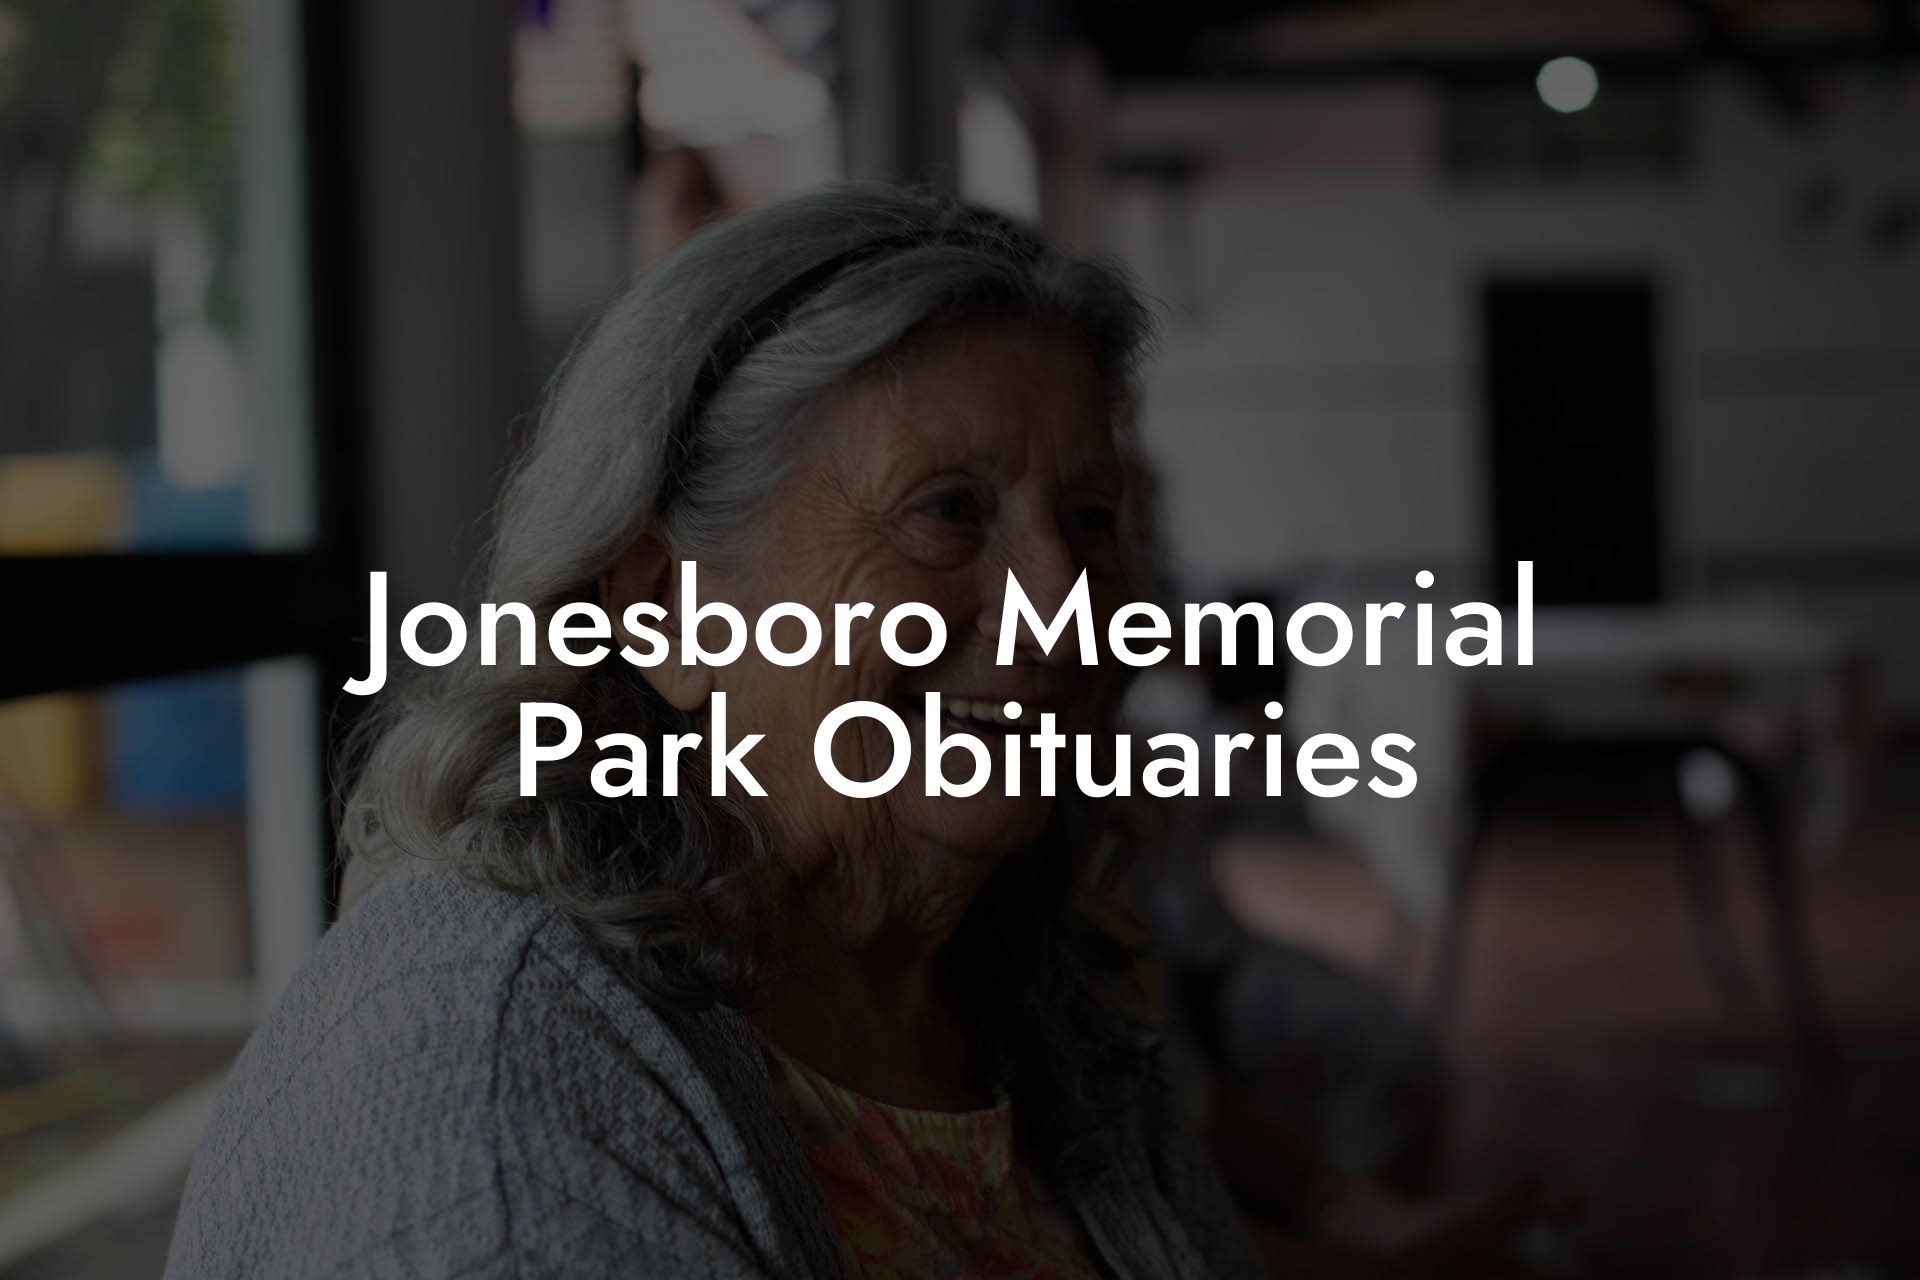 Jonesboro Memorial Park Obituaries